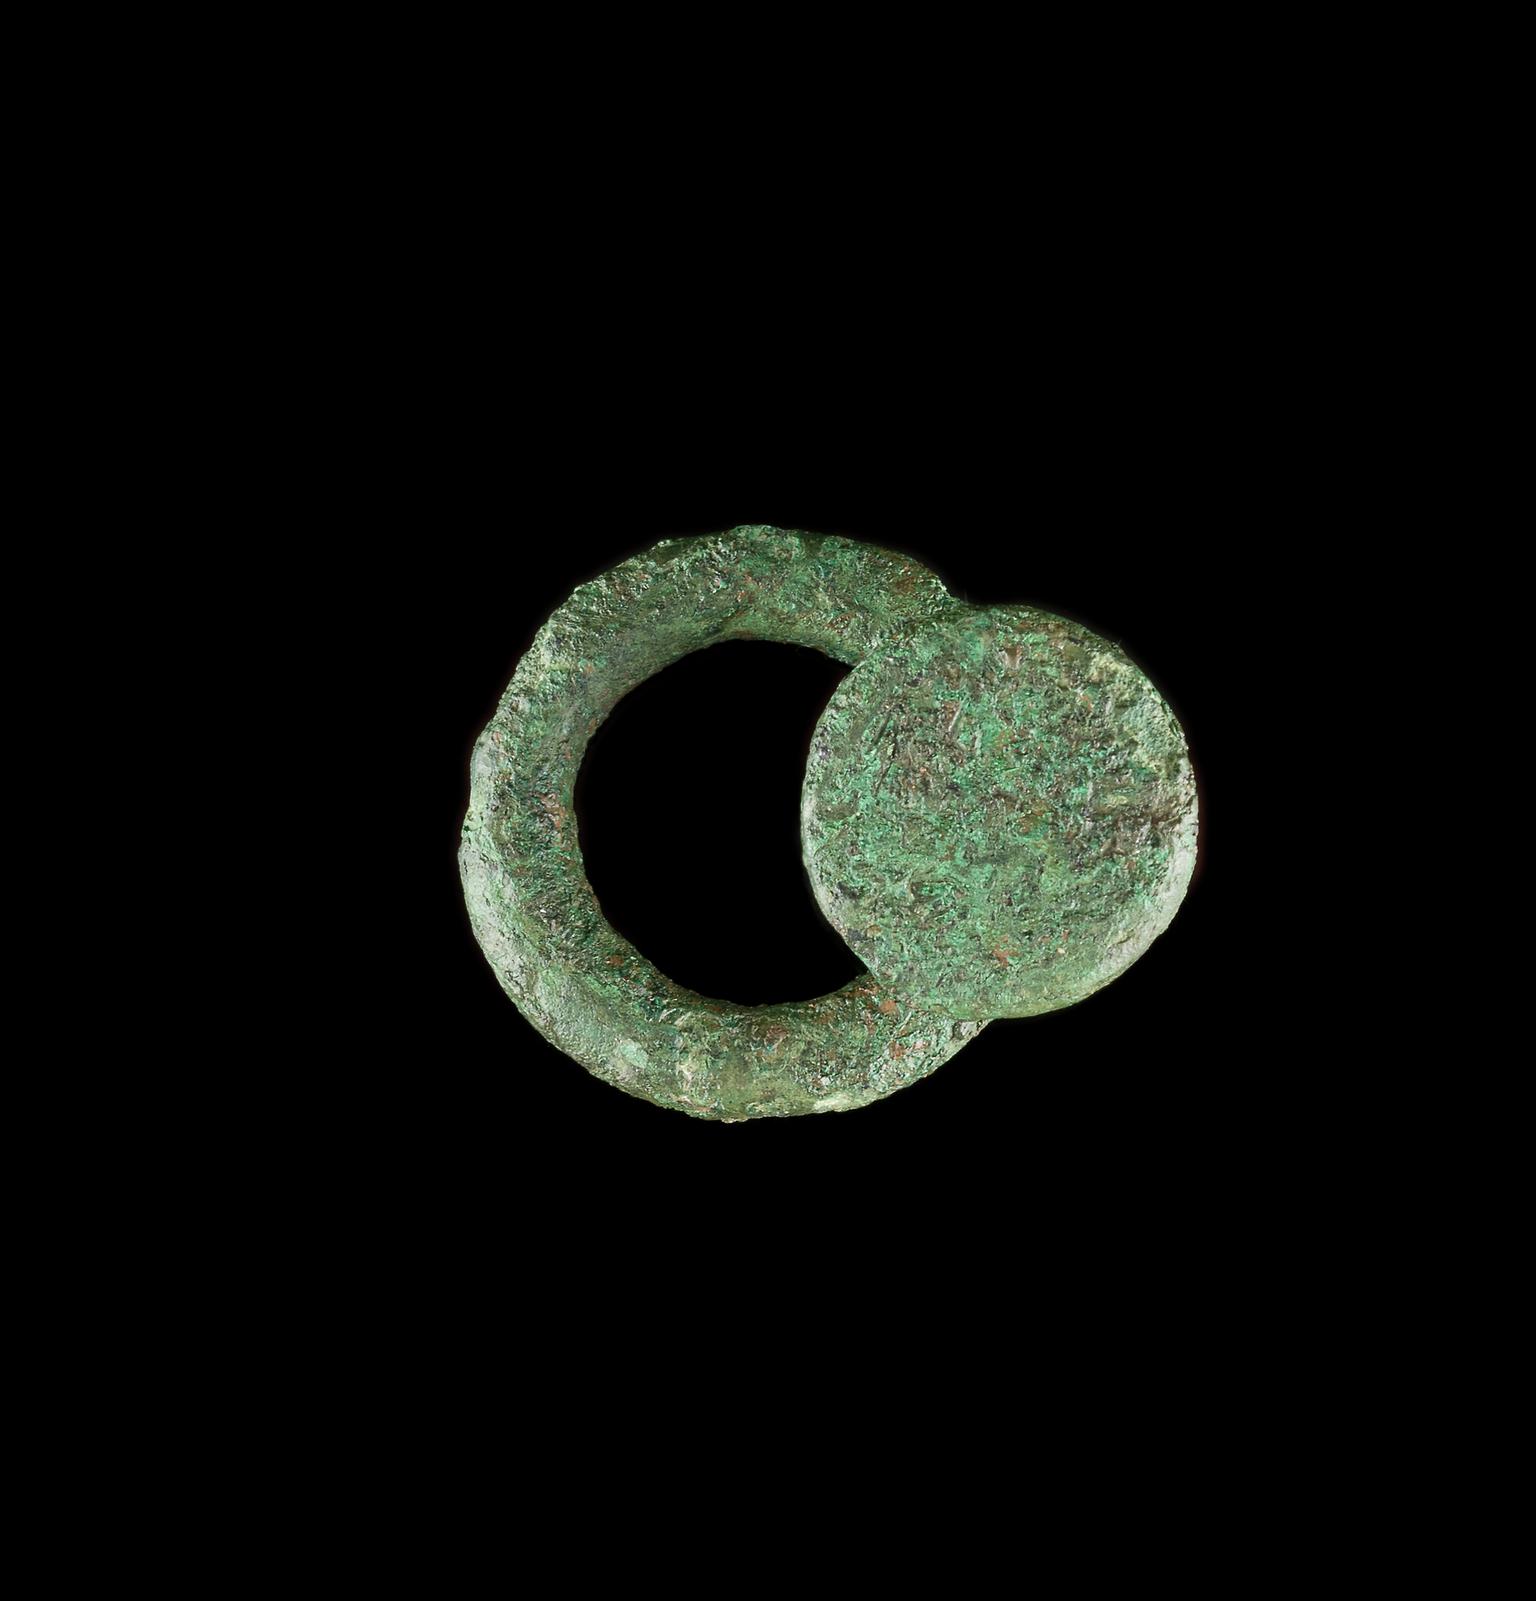 Roman copper alloy harness ring